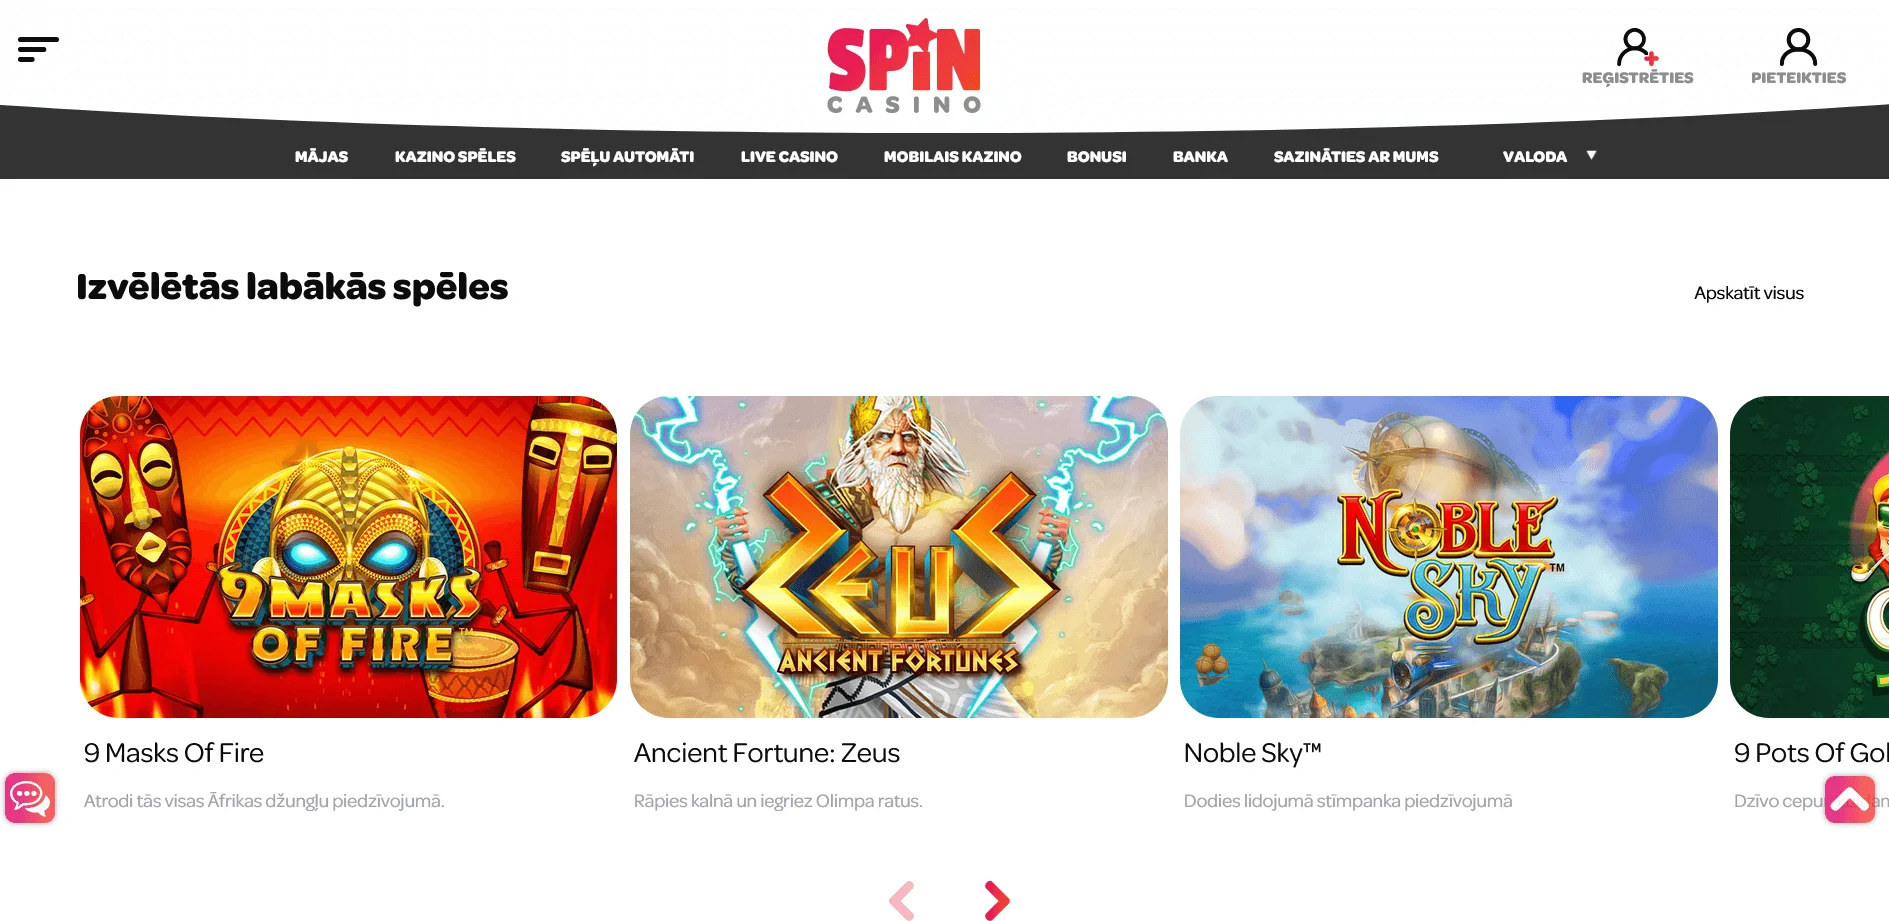 Spin Casino: Sveicināšanas bonusi un akcijas, programma lojalitāte